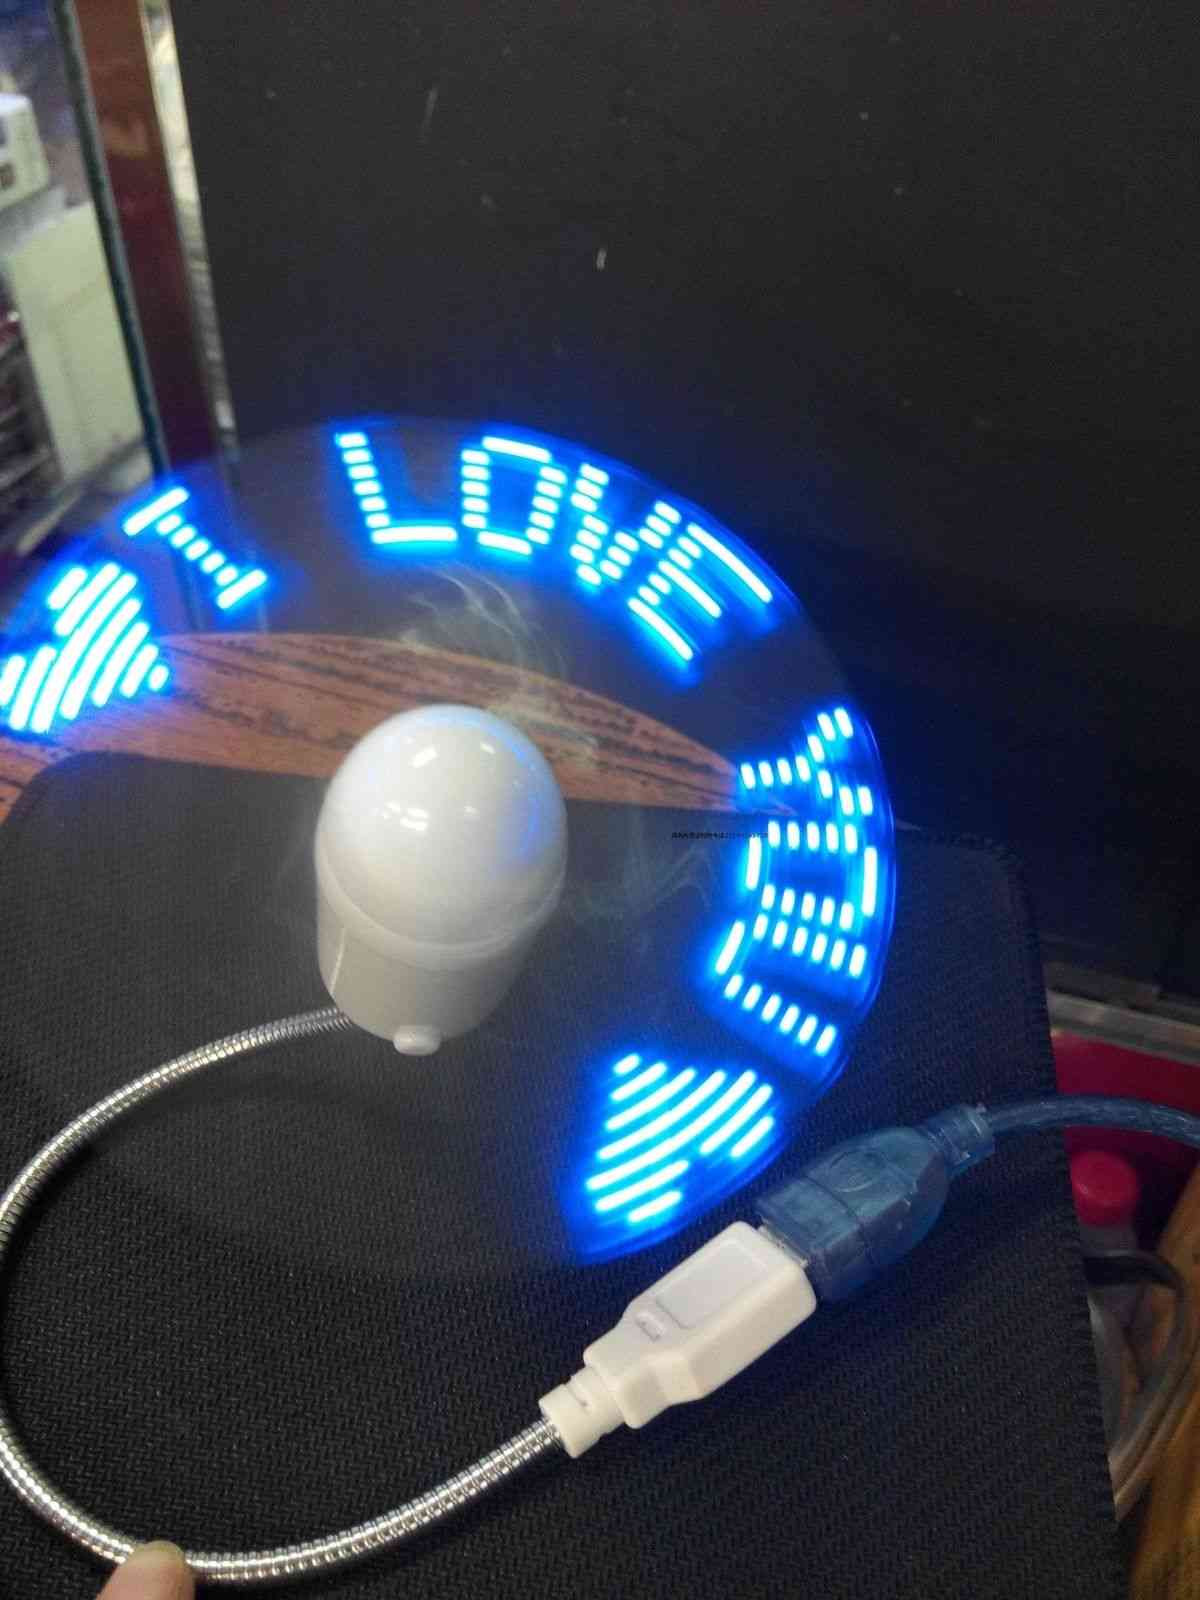 Mini luz led flexible y ajustable, ventilador usb, reloj de tiempo (azul)